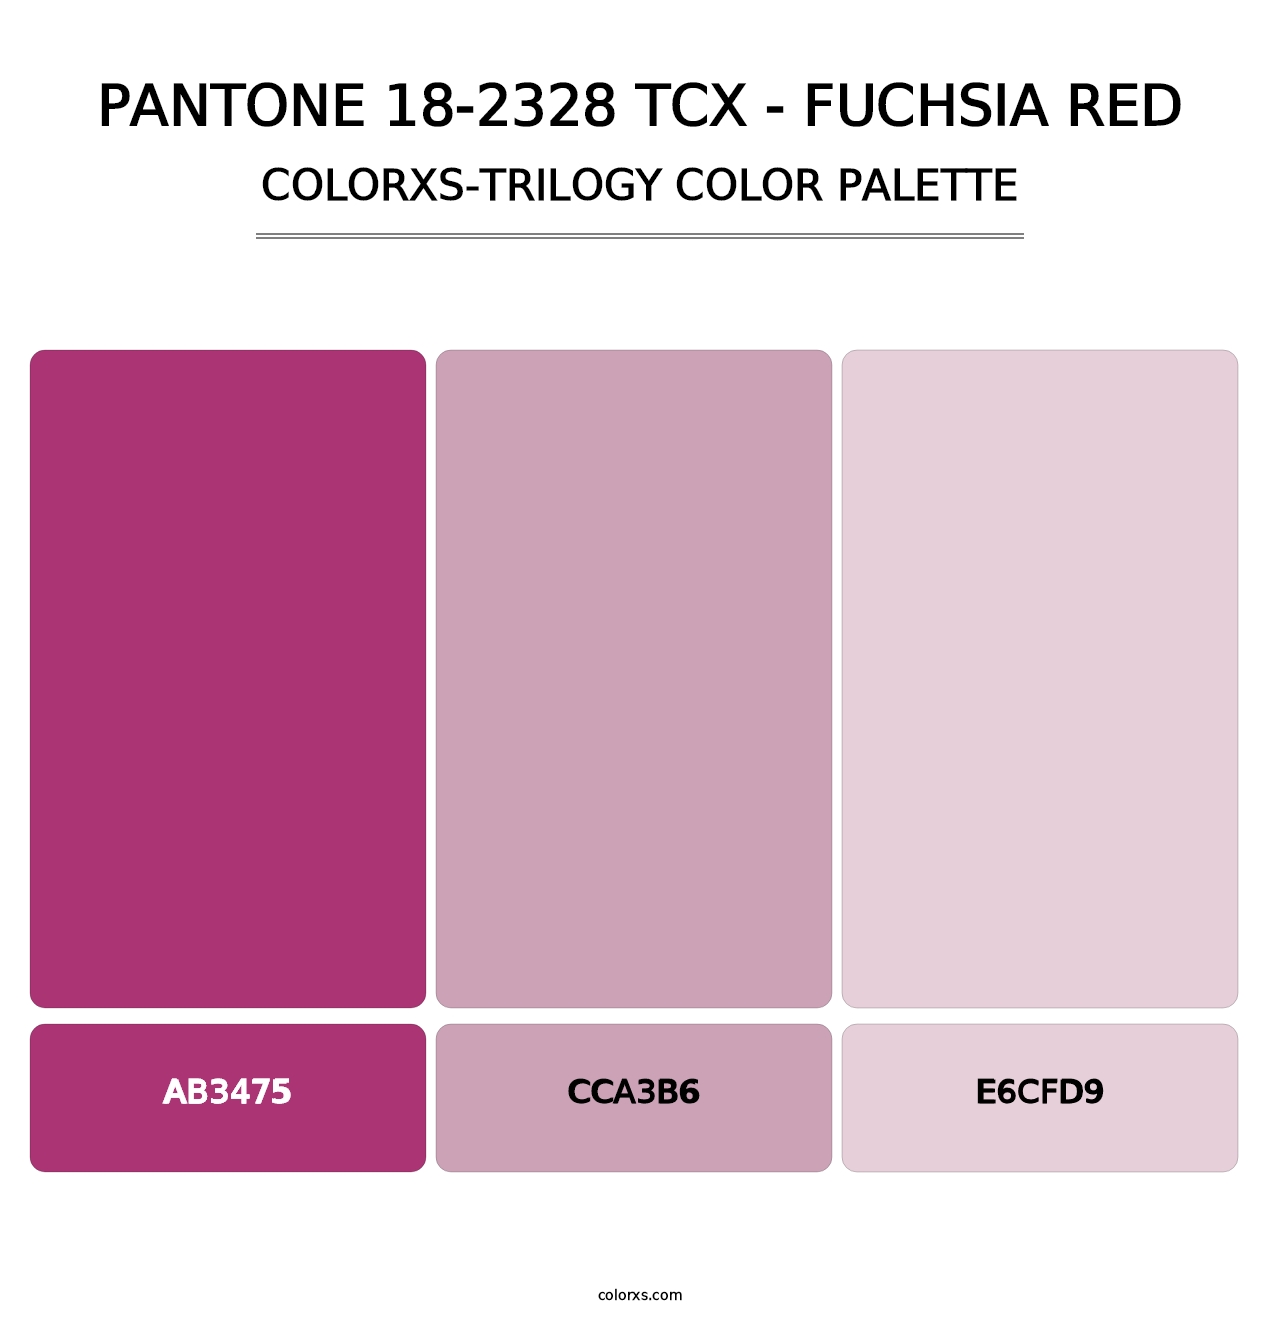 PANTONE 18-2328 TCX - Fuchsia Red - Colorxs Trilogy Palette